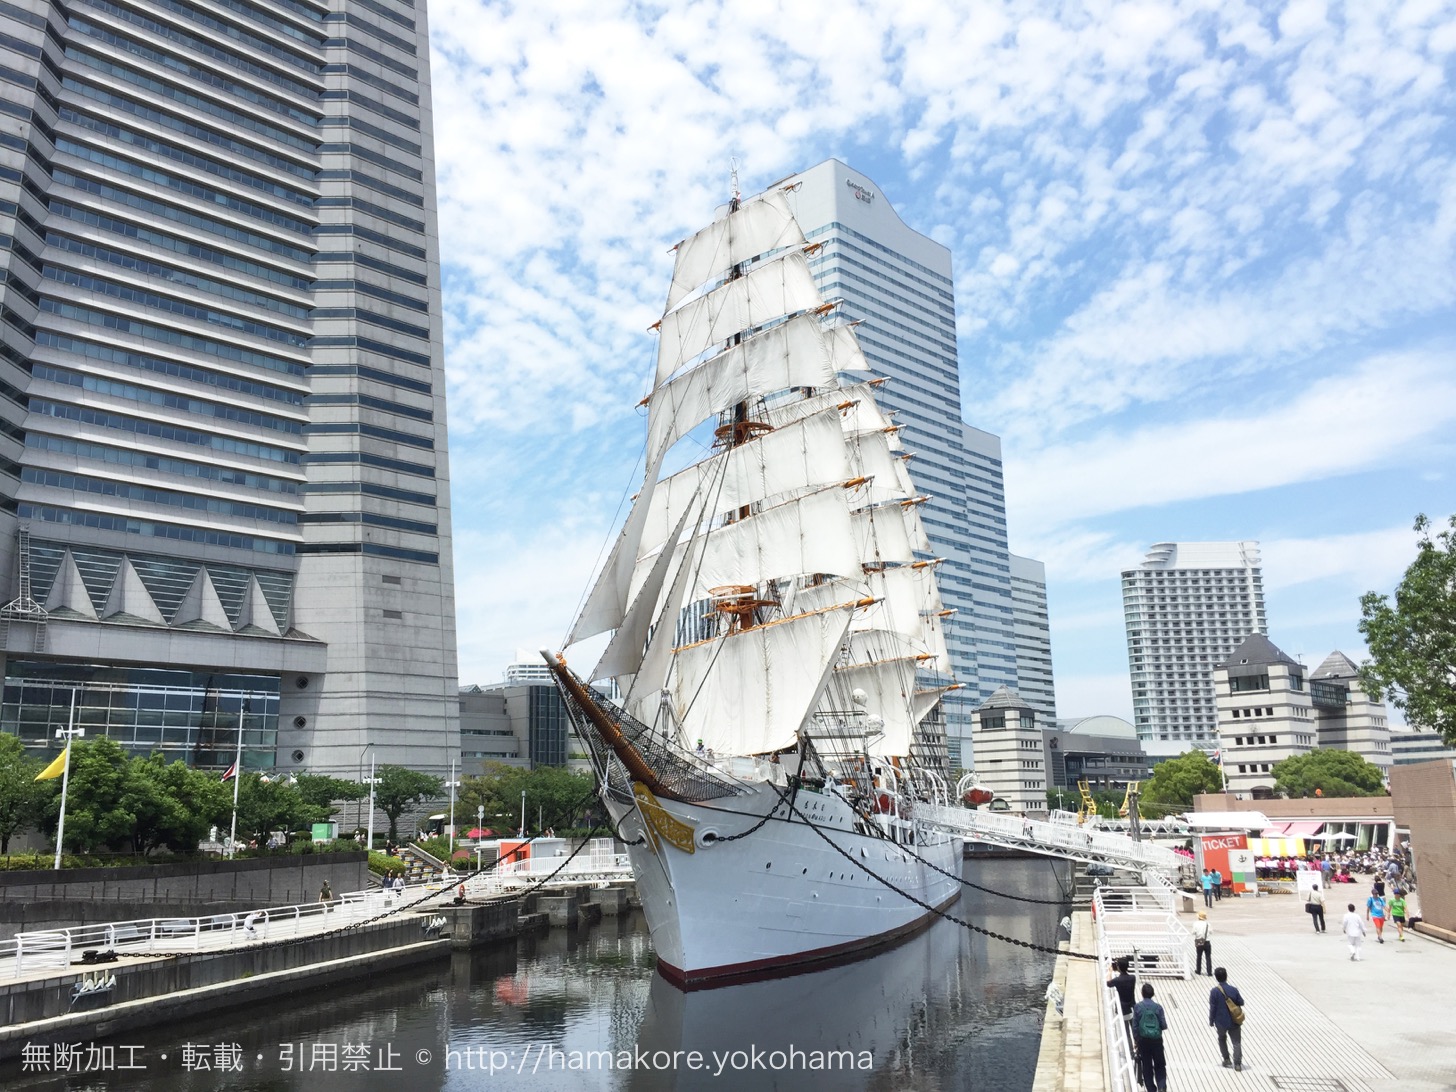 帆船日本丸「総帆展帆」を9月2日に開催！2018年開催はあと3回